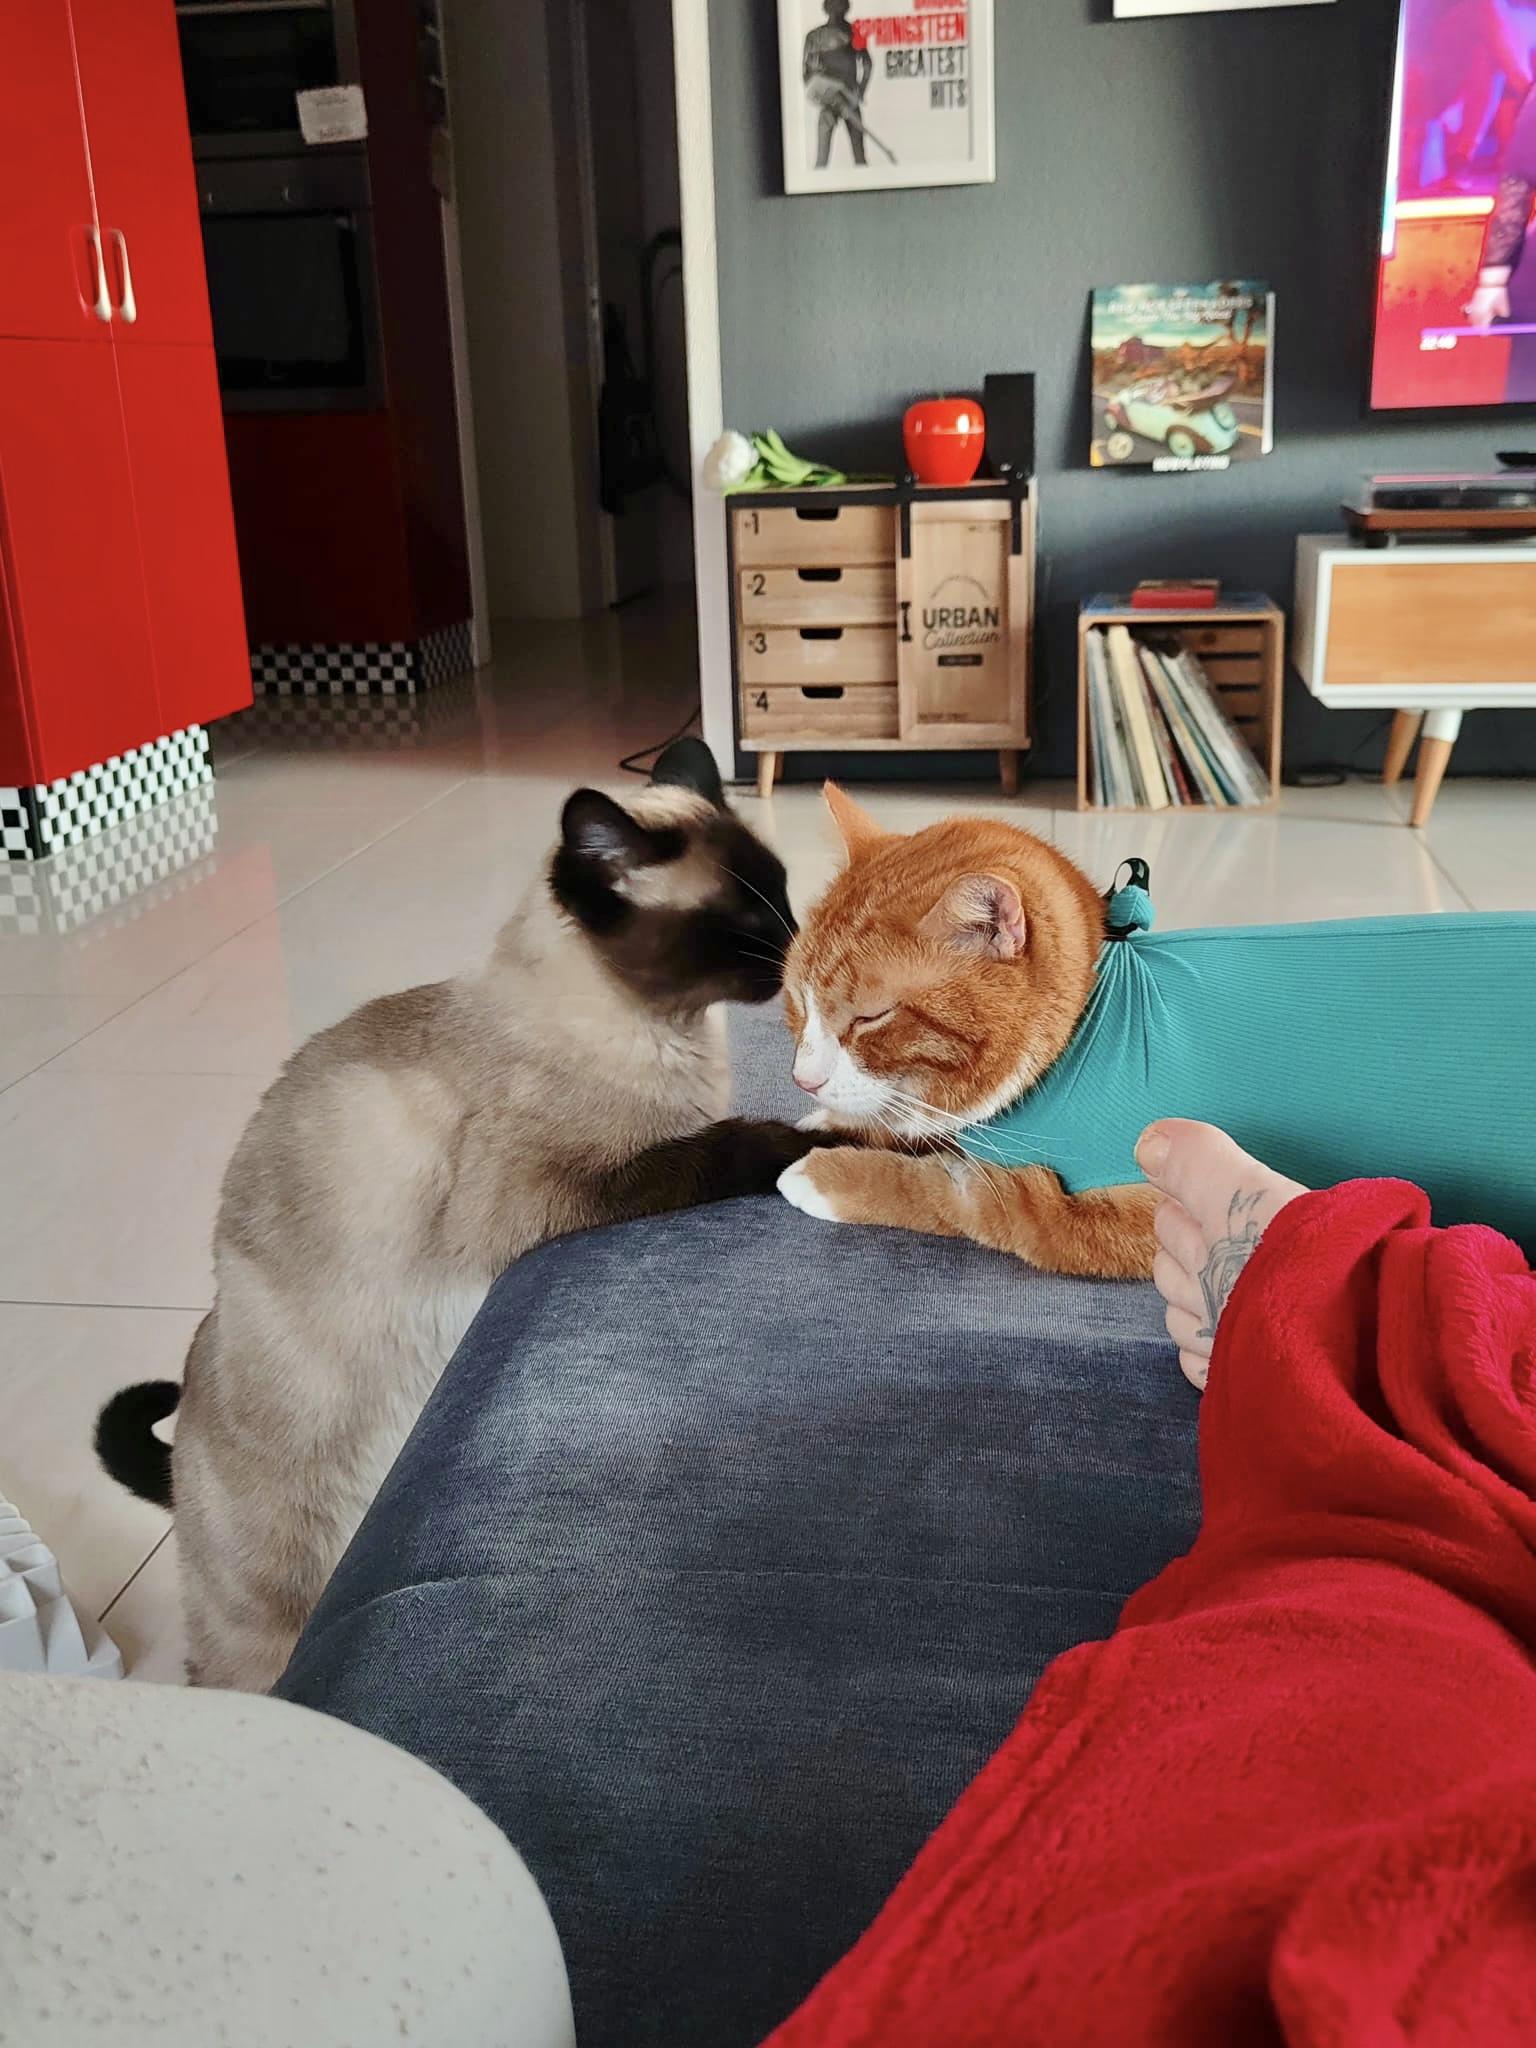 Rot weisser Kater im OP Body Zuhause auf dem Sofa mit seinem Katzen Freund und seinem Besitzer